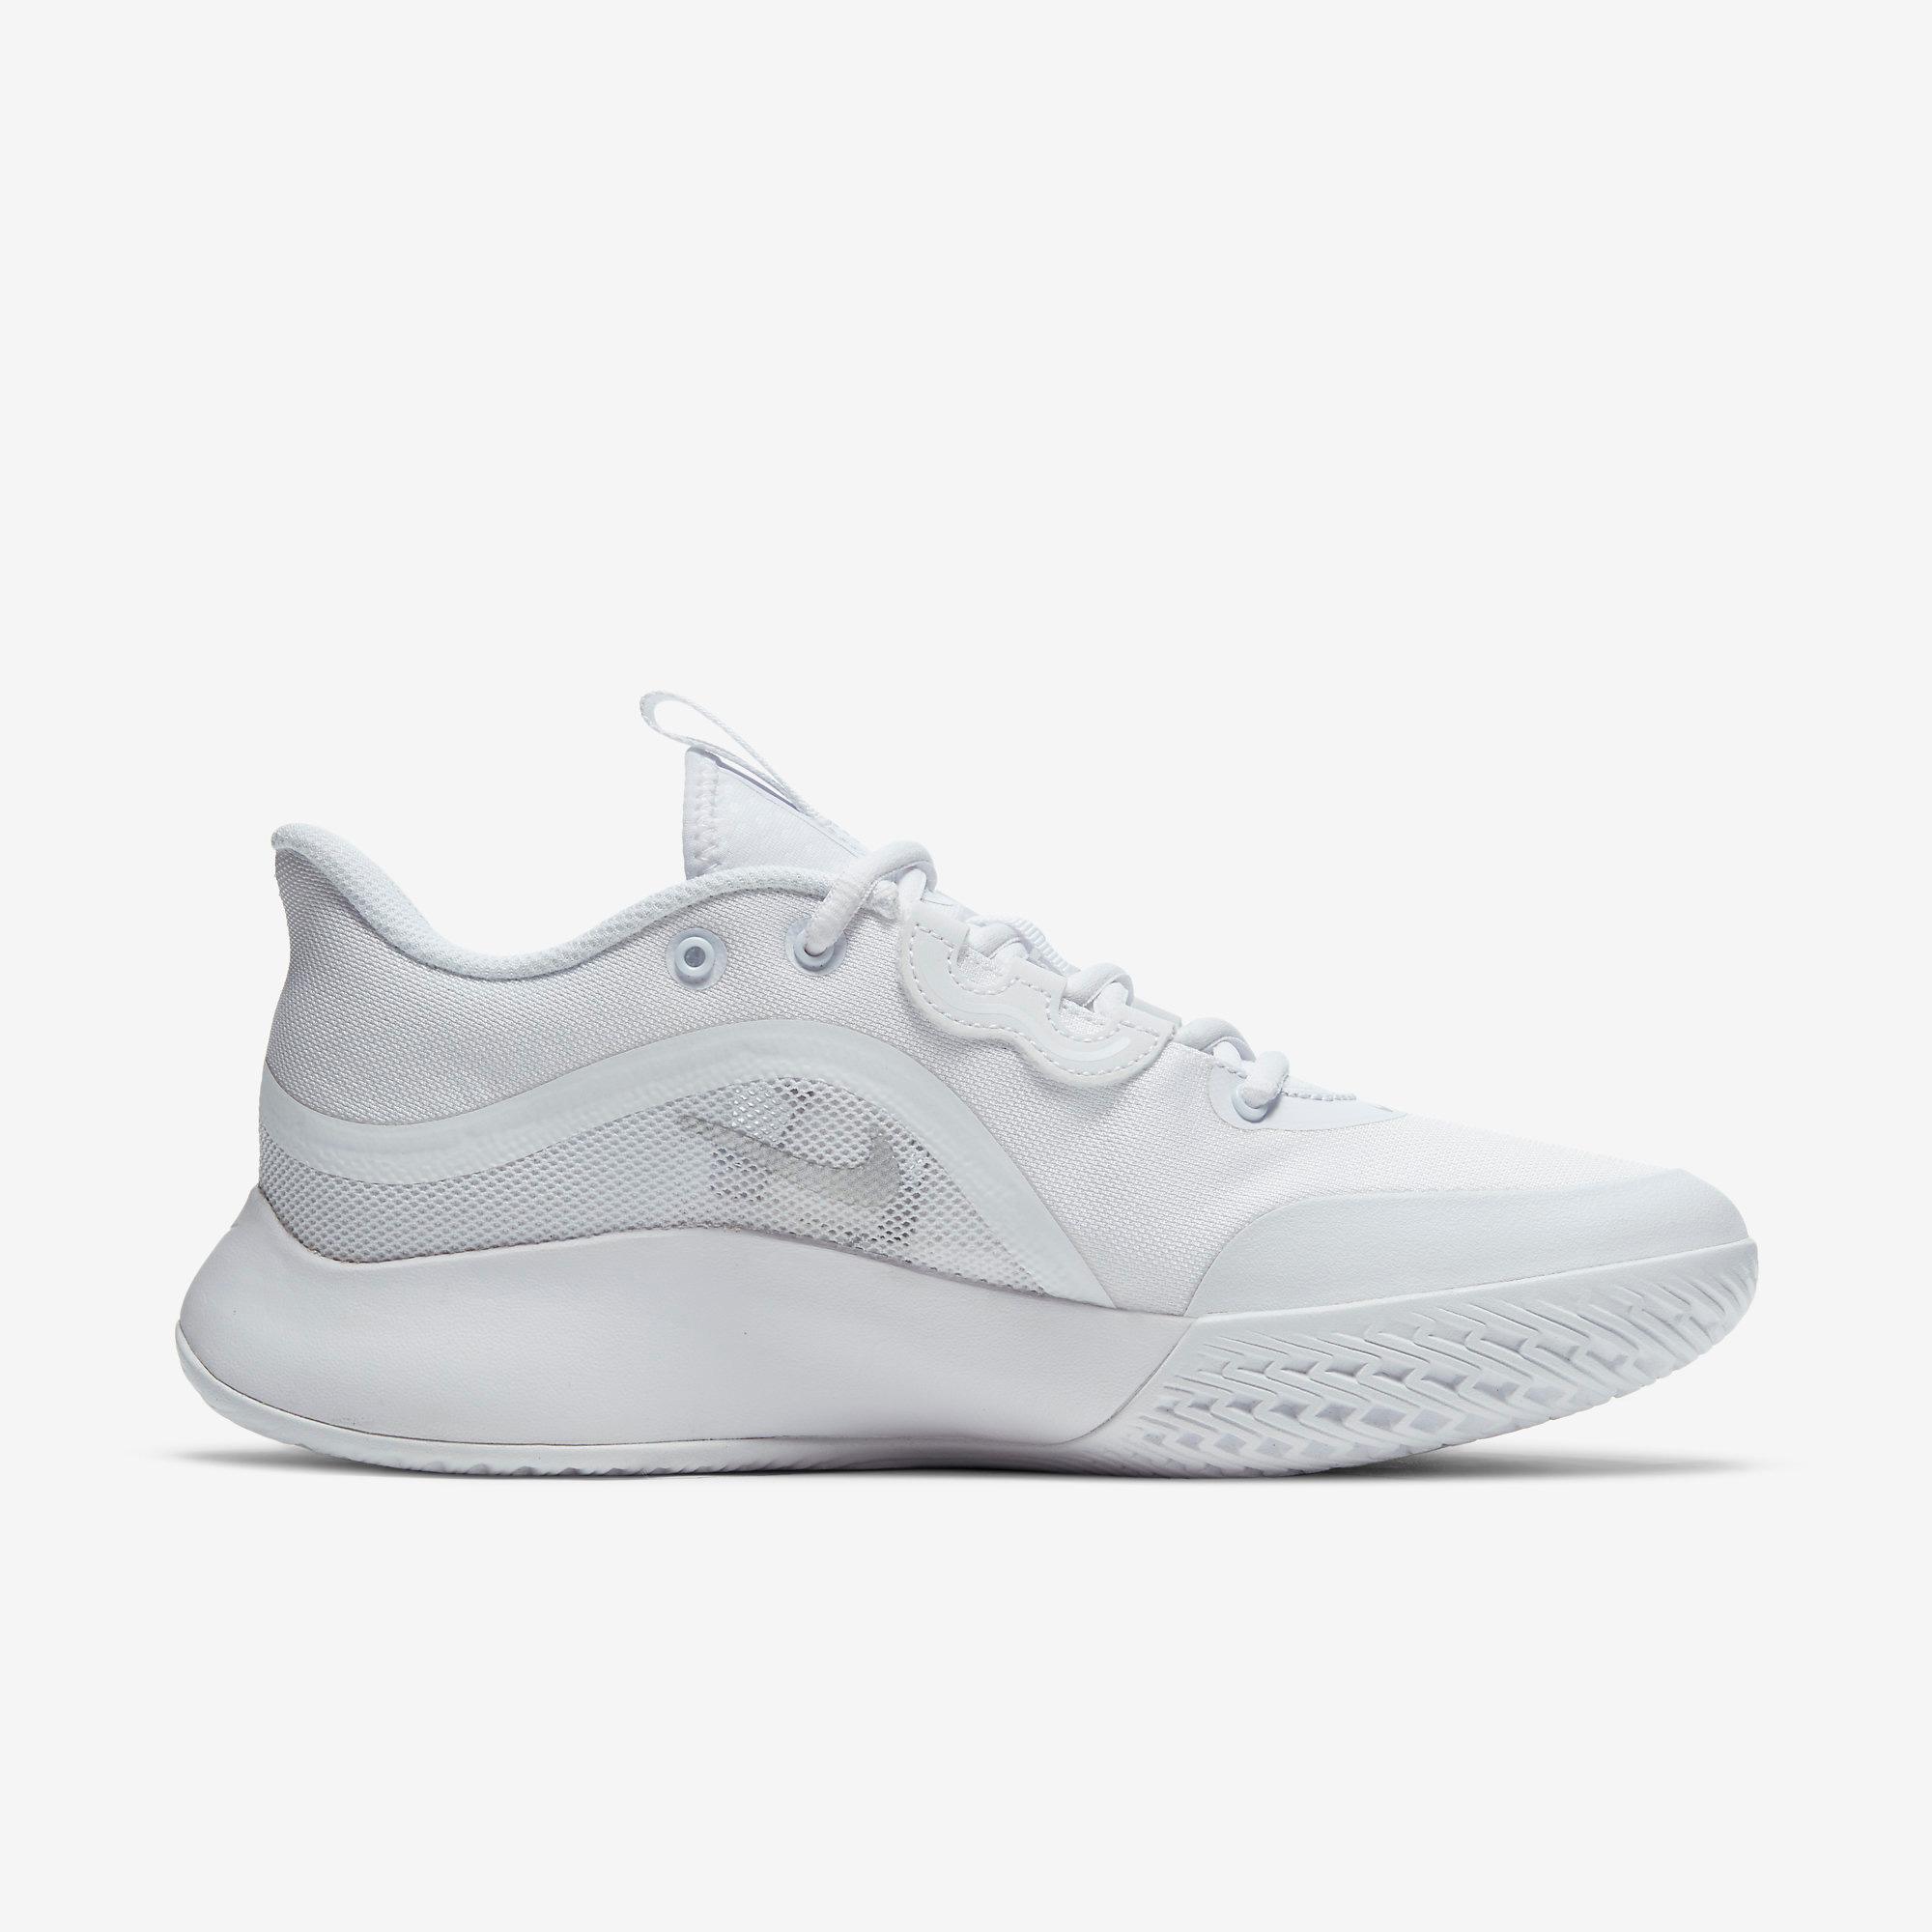 Nike Womens Air Max Volley Tennis Shoes - White - Tennisnuts.com